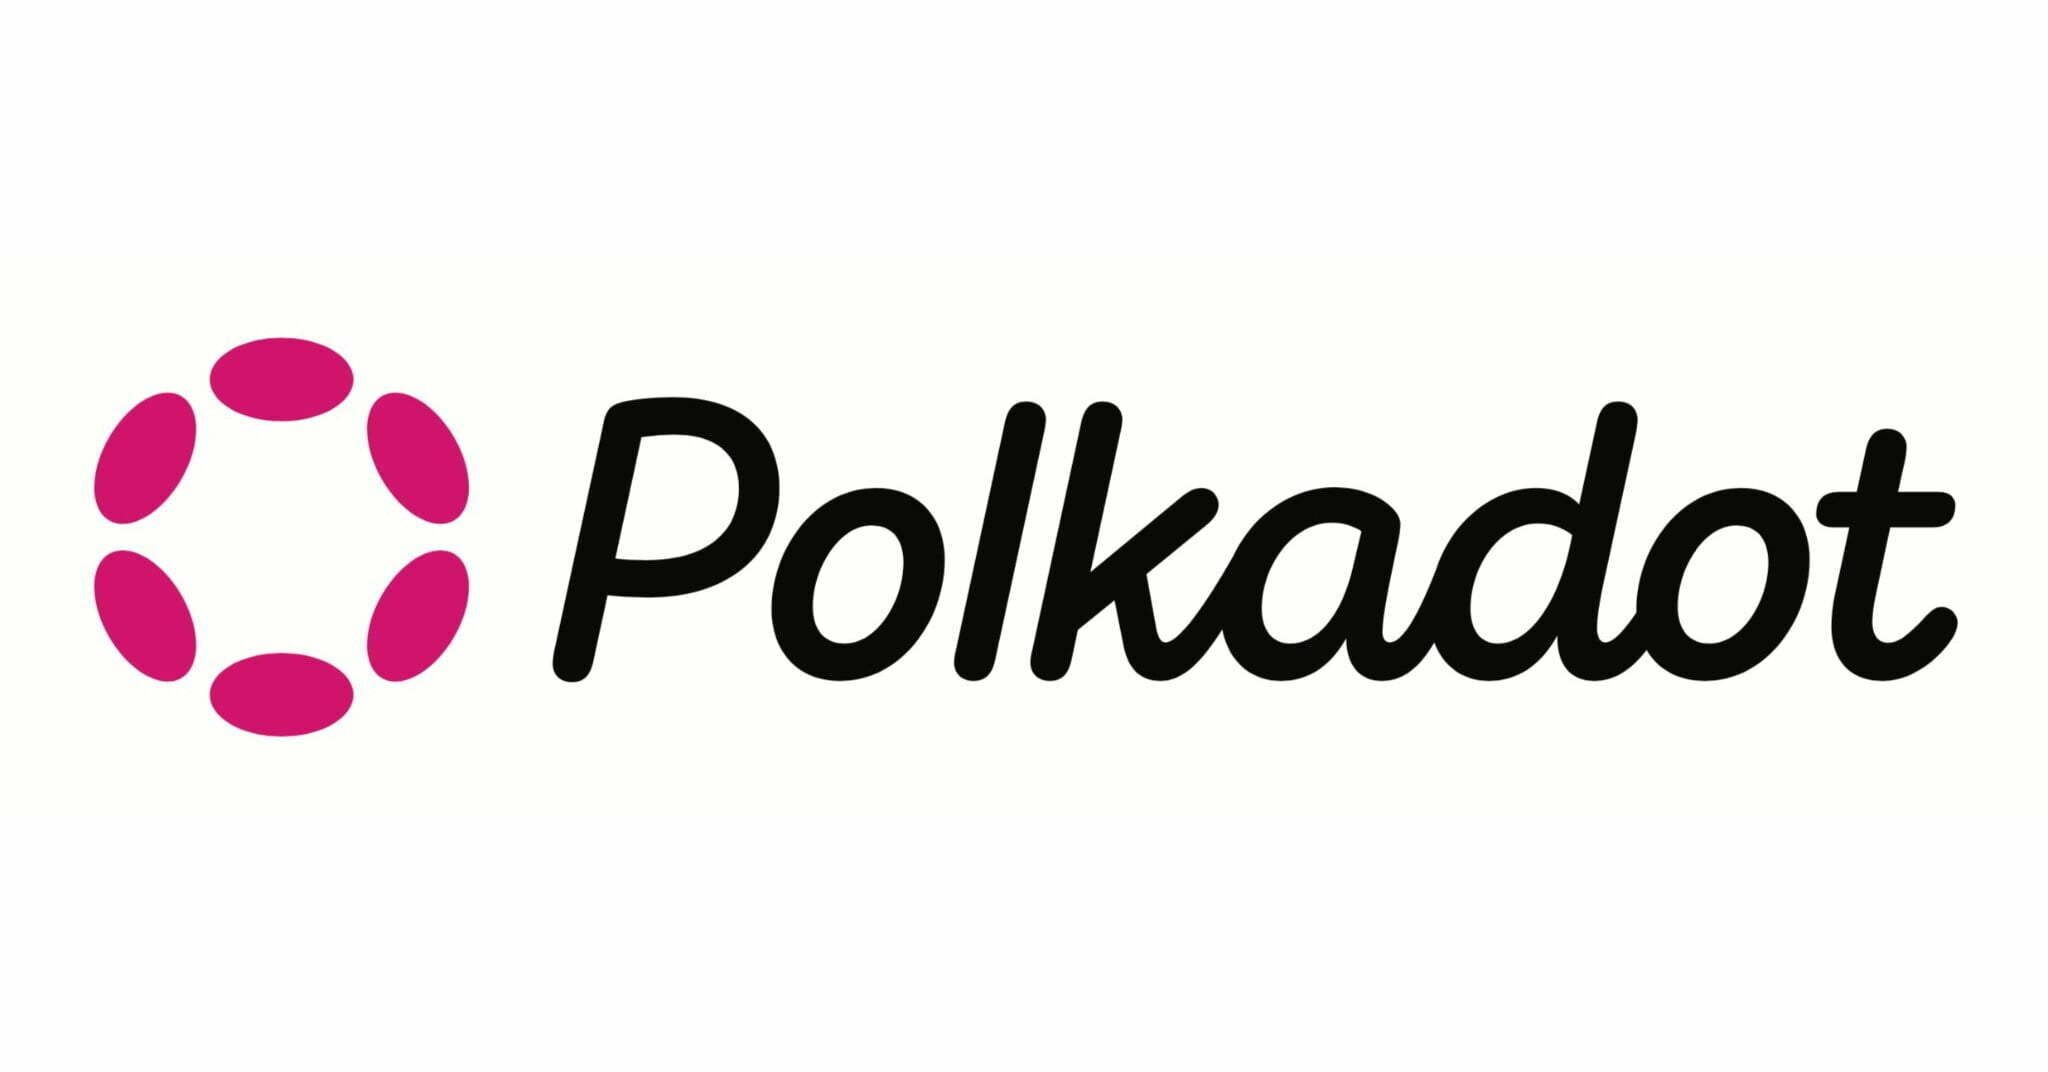 Ce ar trebui să știi despre Polkadot? dot